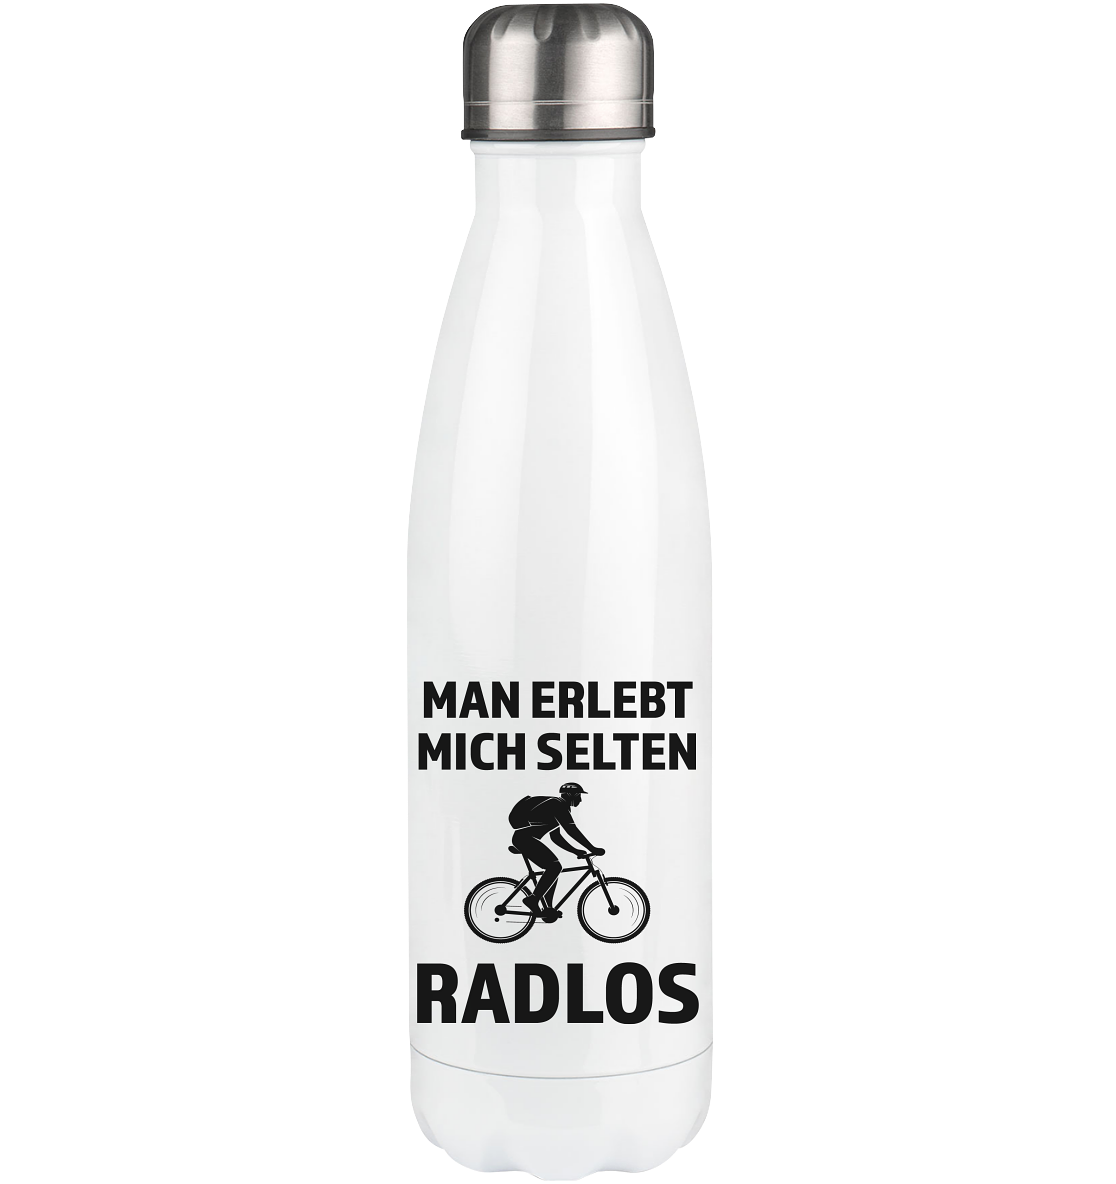 Man erlebt mich selten radlos - Edelstahl Thermosflasche fahrrad mountainbike 500ml